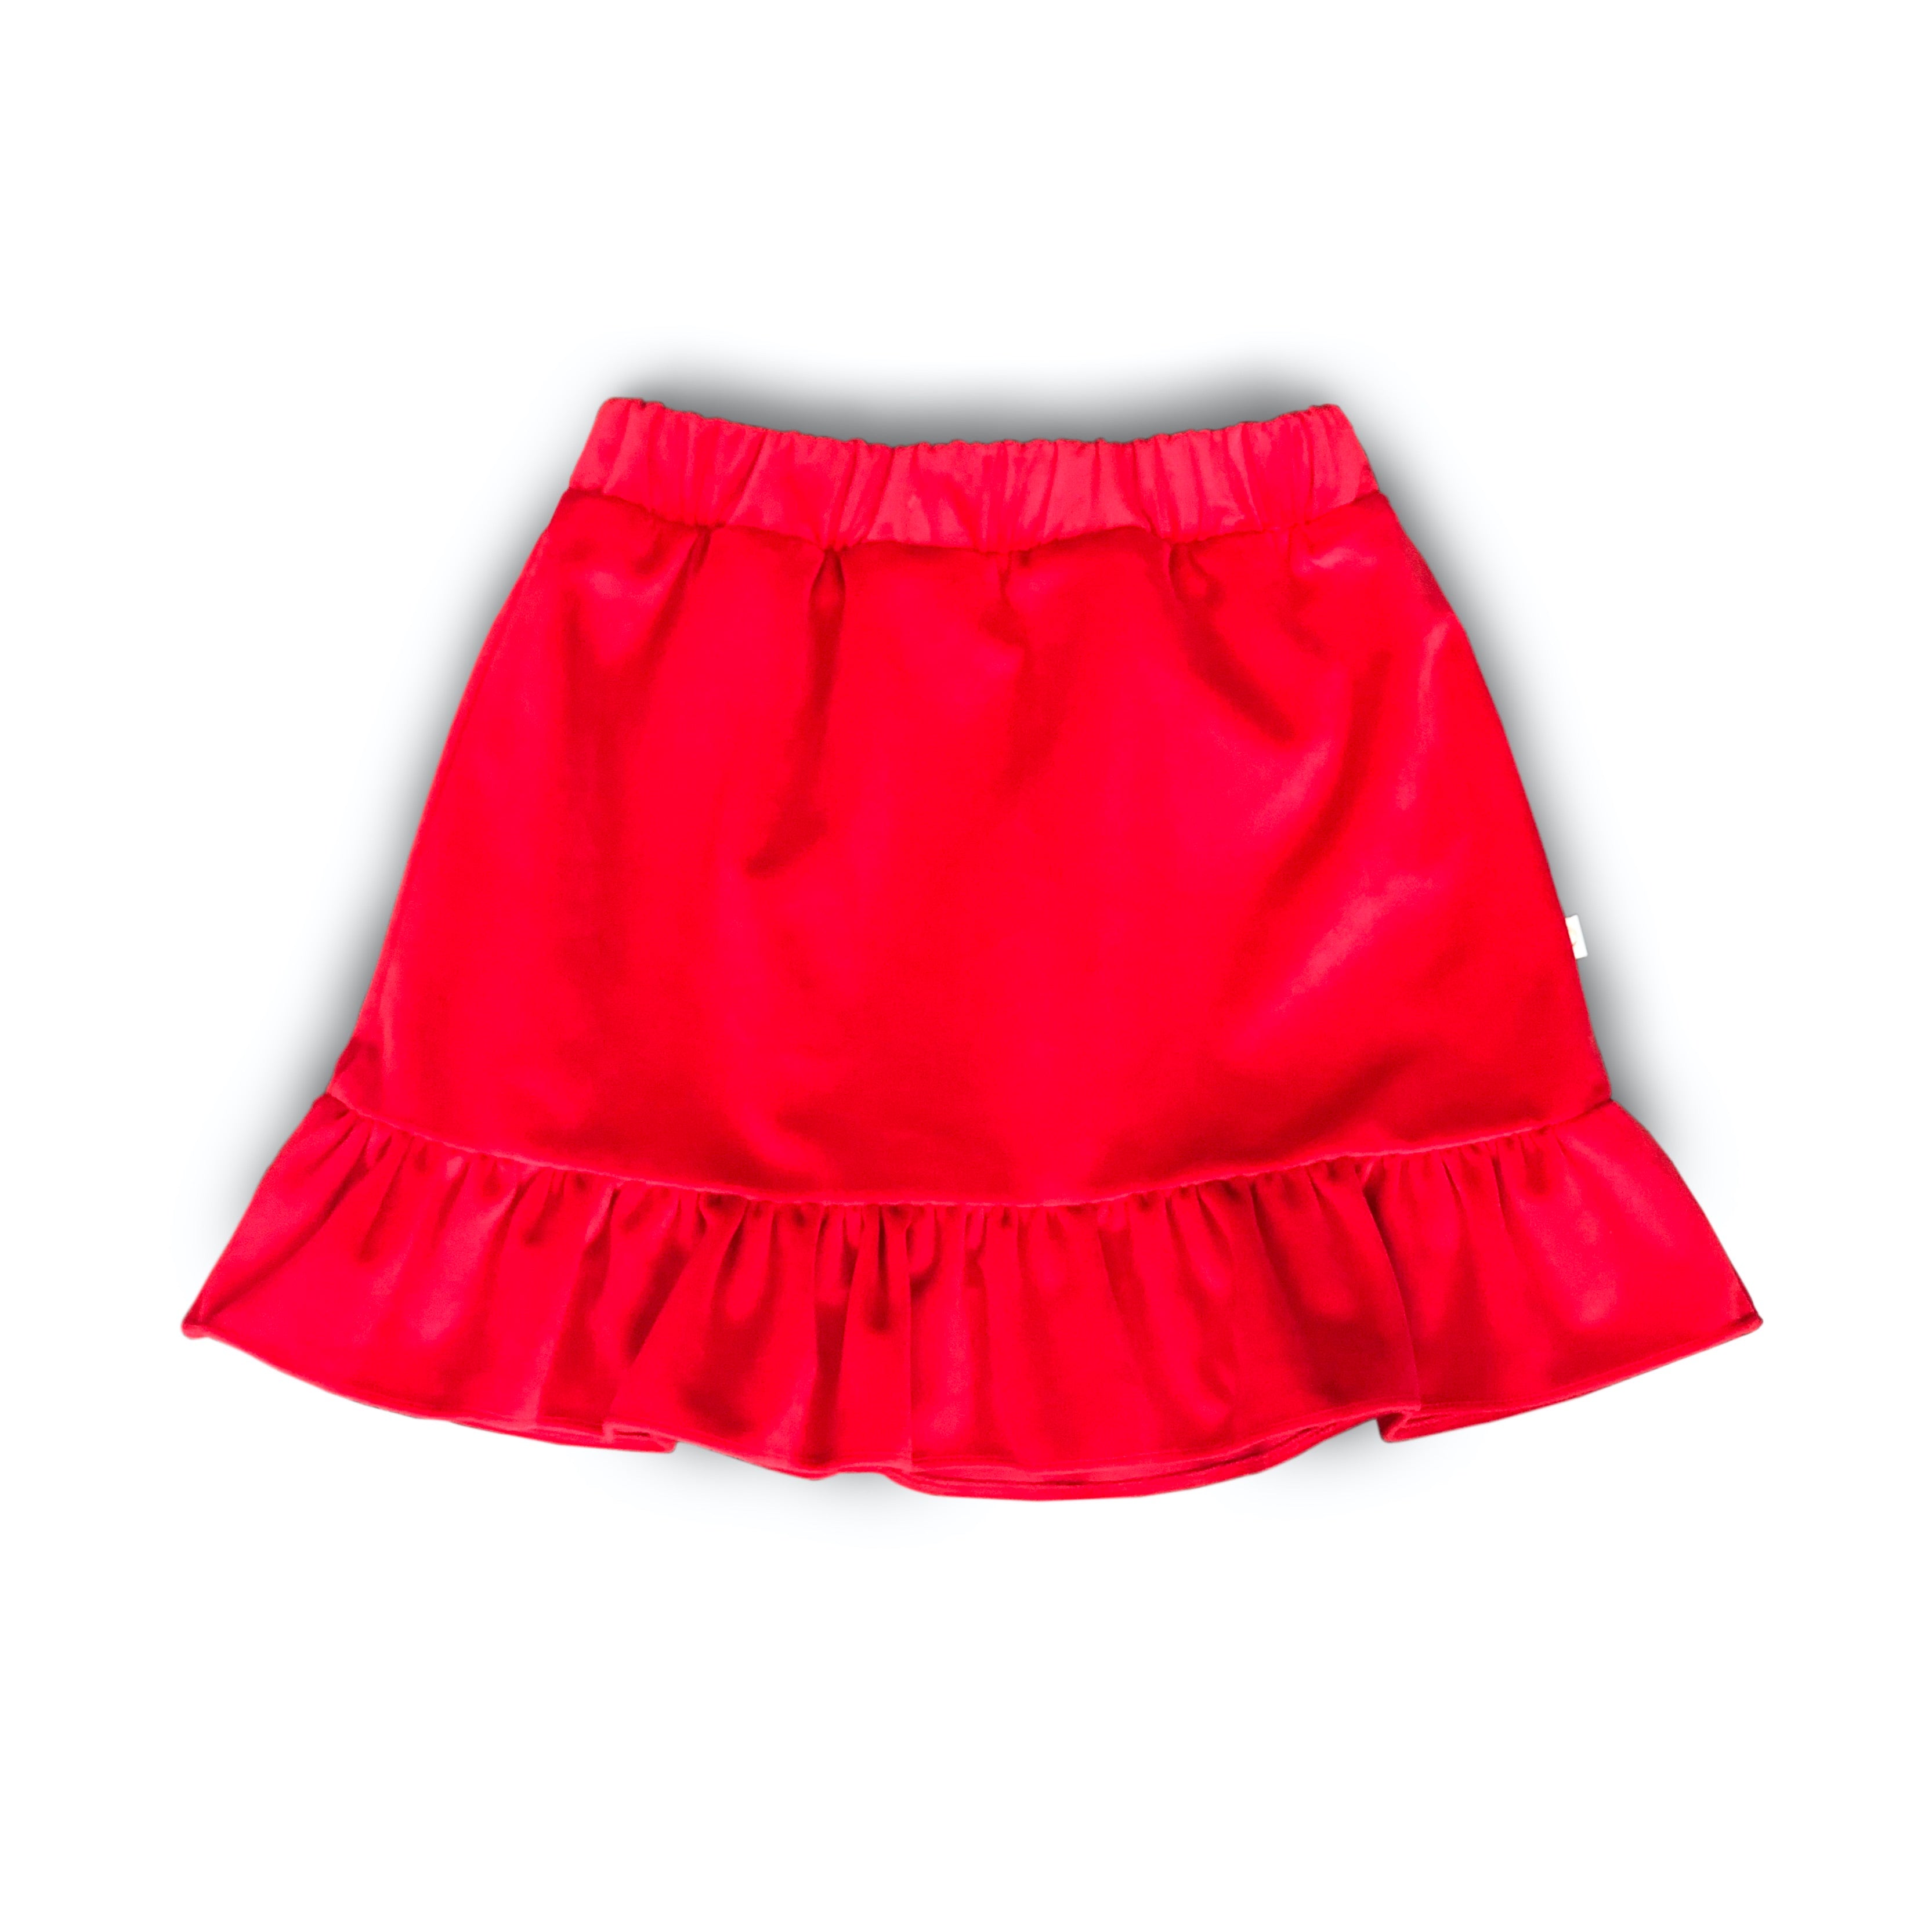 AW20/21 Red Velvet Frill Skirt